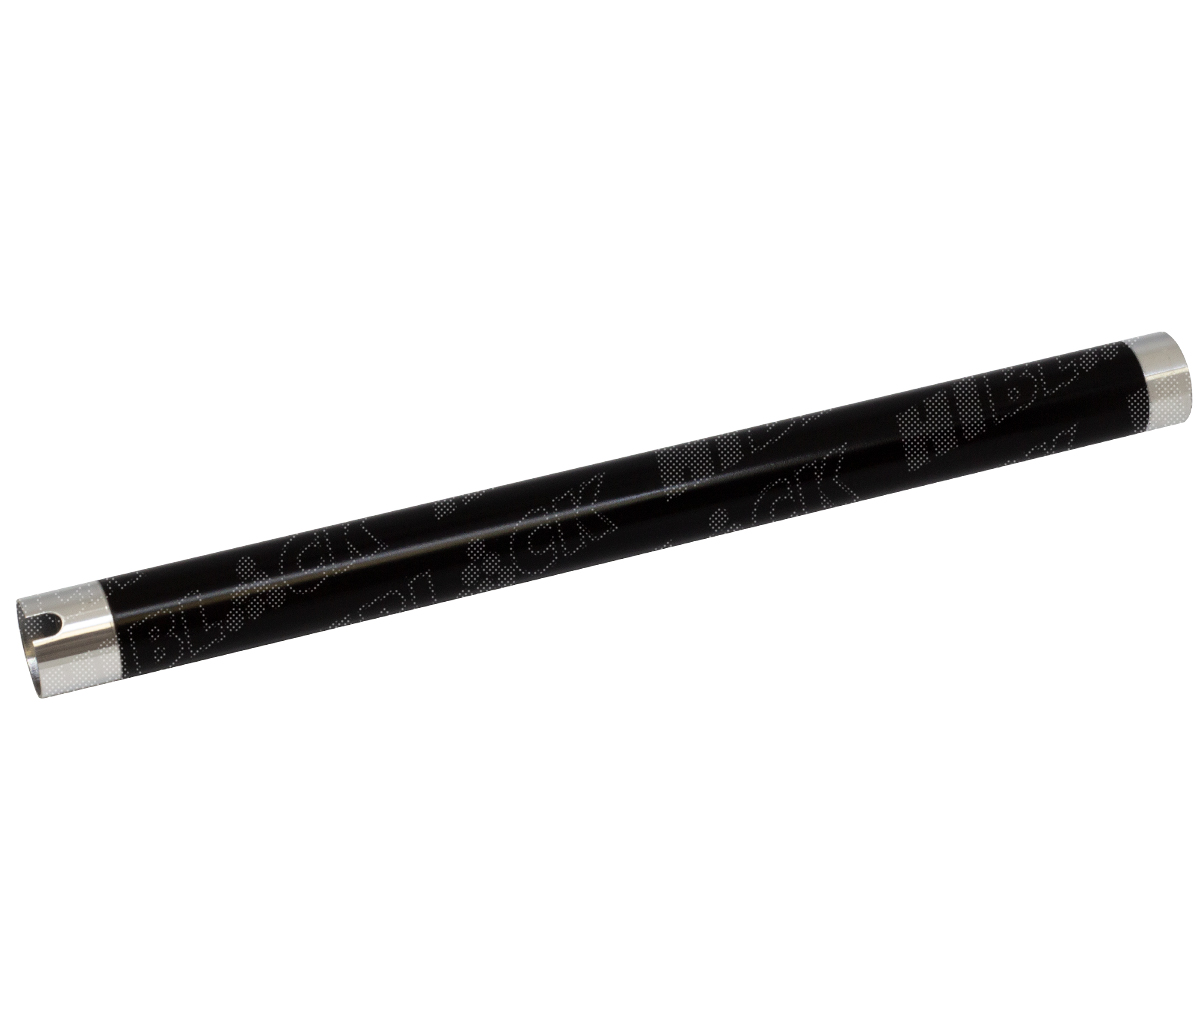 Вал тефлоновый верхний Hi-Black для SamsungSCX-4200/4220